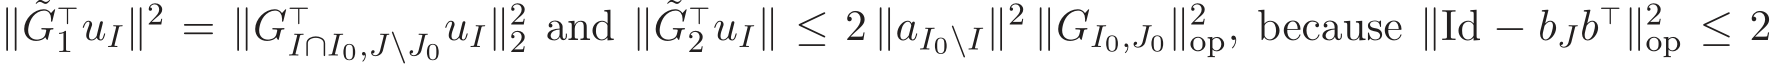  ∥ ˜G⊤1 uI∥2 = ∥G⊤I∩I0,J\J0uI∥22 and ∥ ˜G⊤2 uI∥ ≤ 2 ∥aI0\I∥2 ∥GI0,J0∥2op, because ∥Id − bJb⊤∥2op ≤ 2